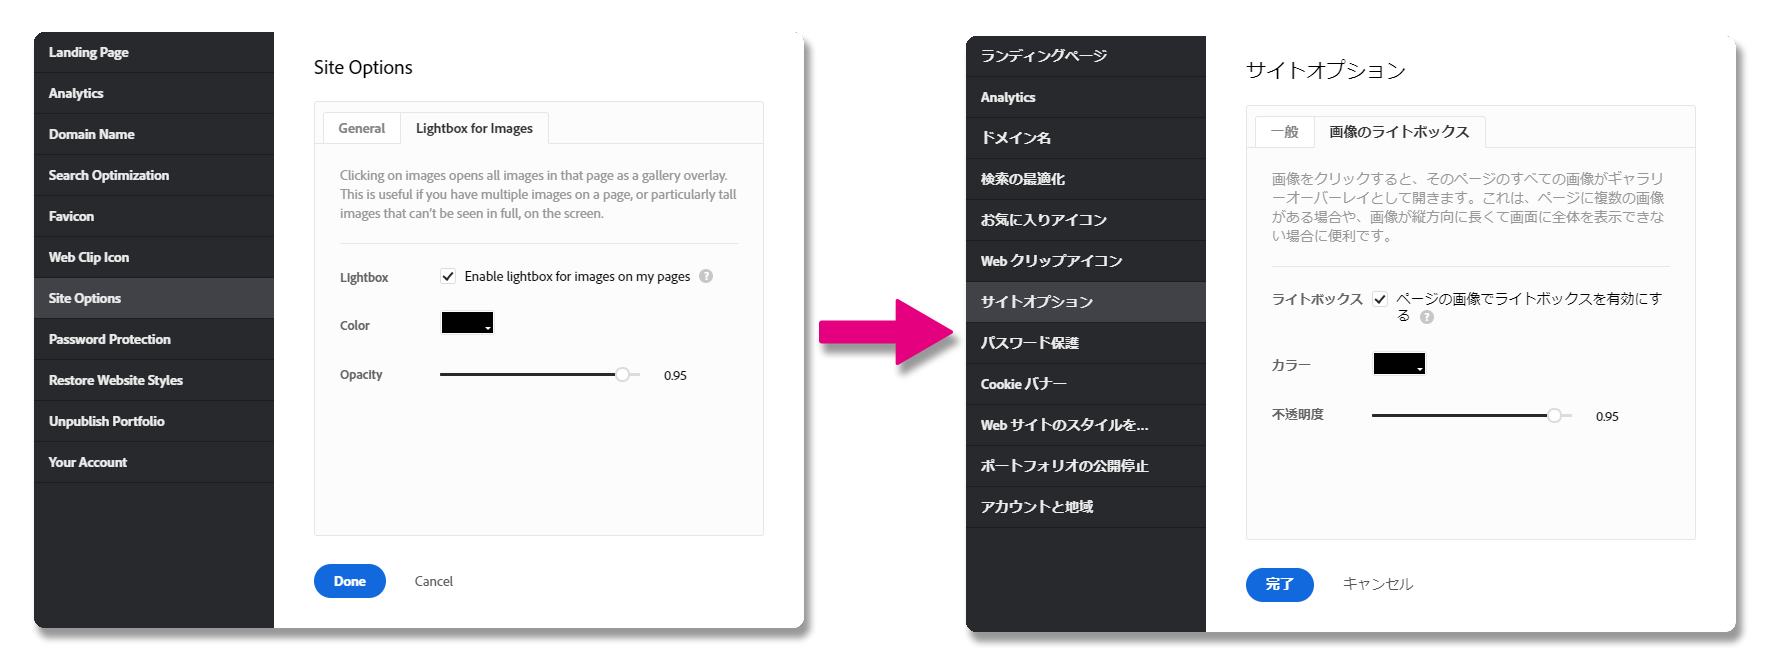 管理画面-日本語化